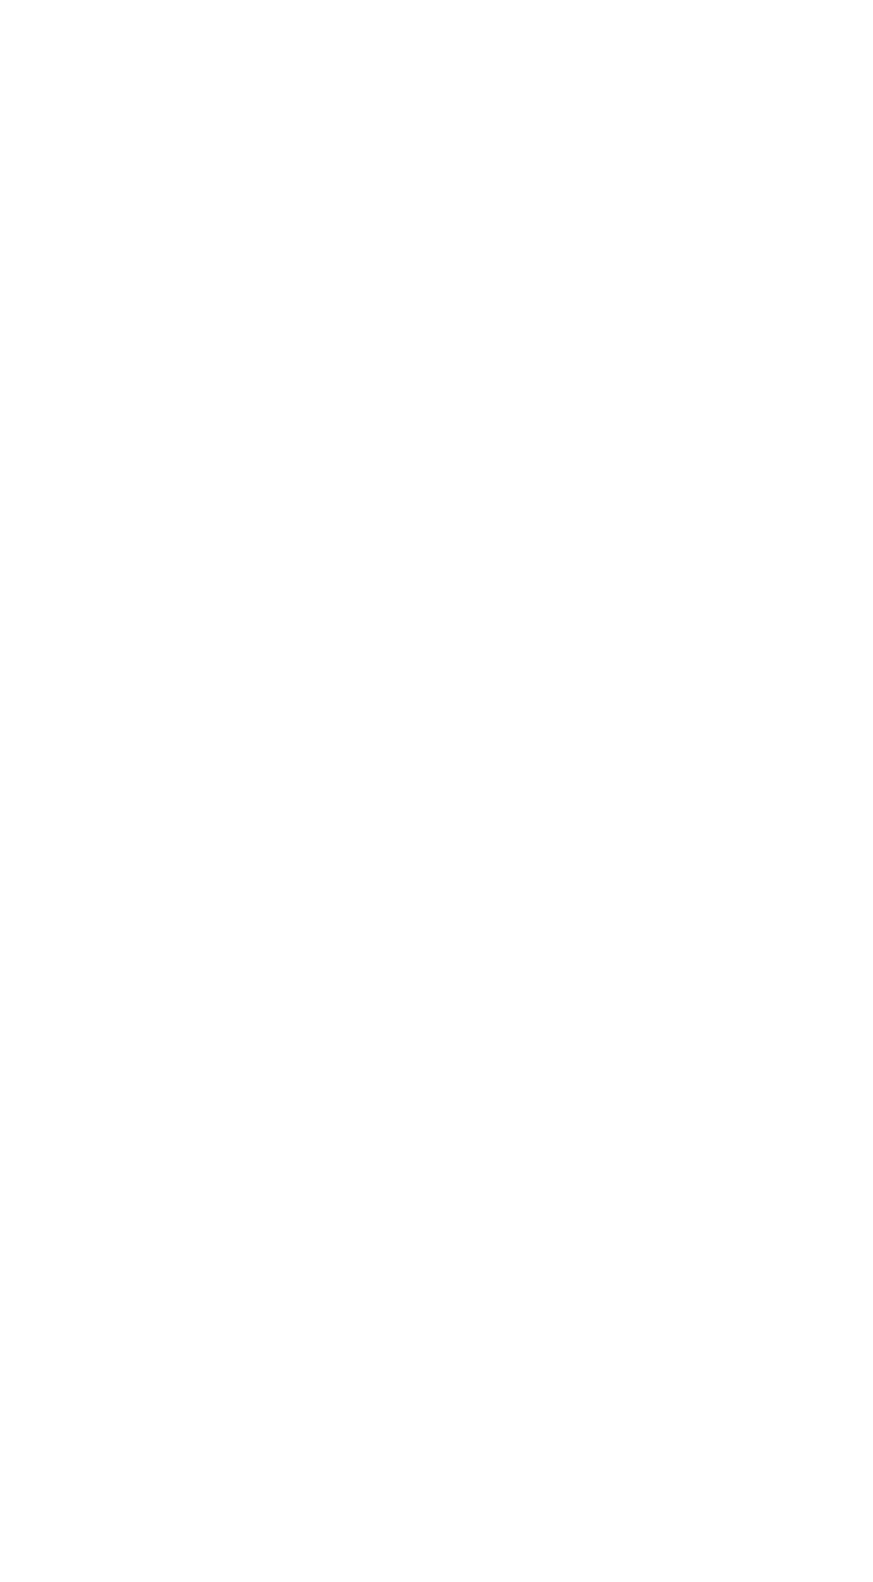 Preferred Bank logo for dark backgrounds (transparent PNG)